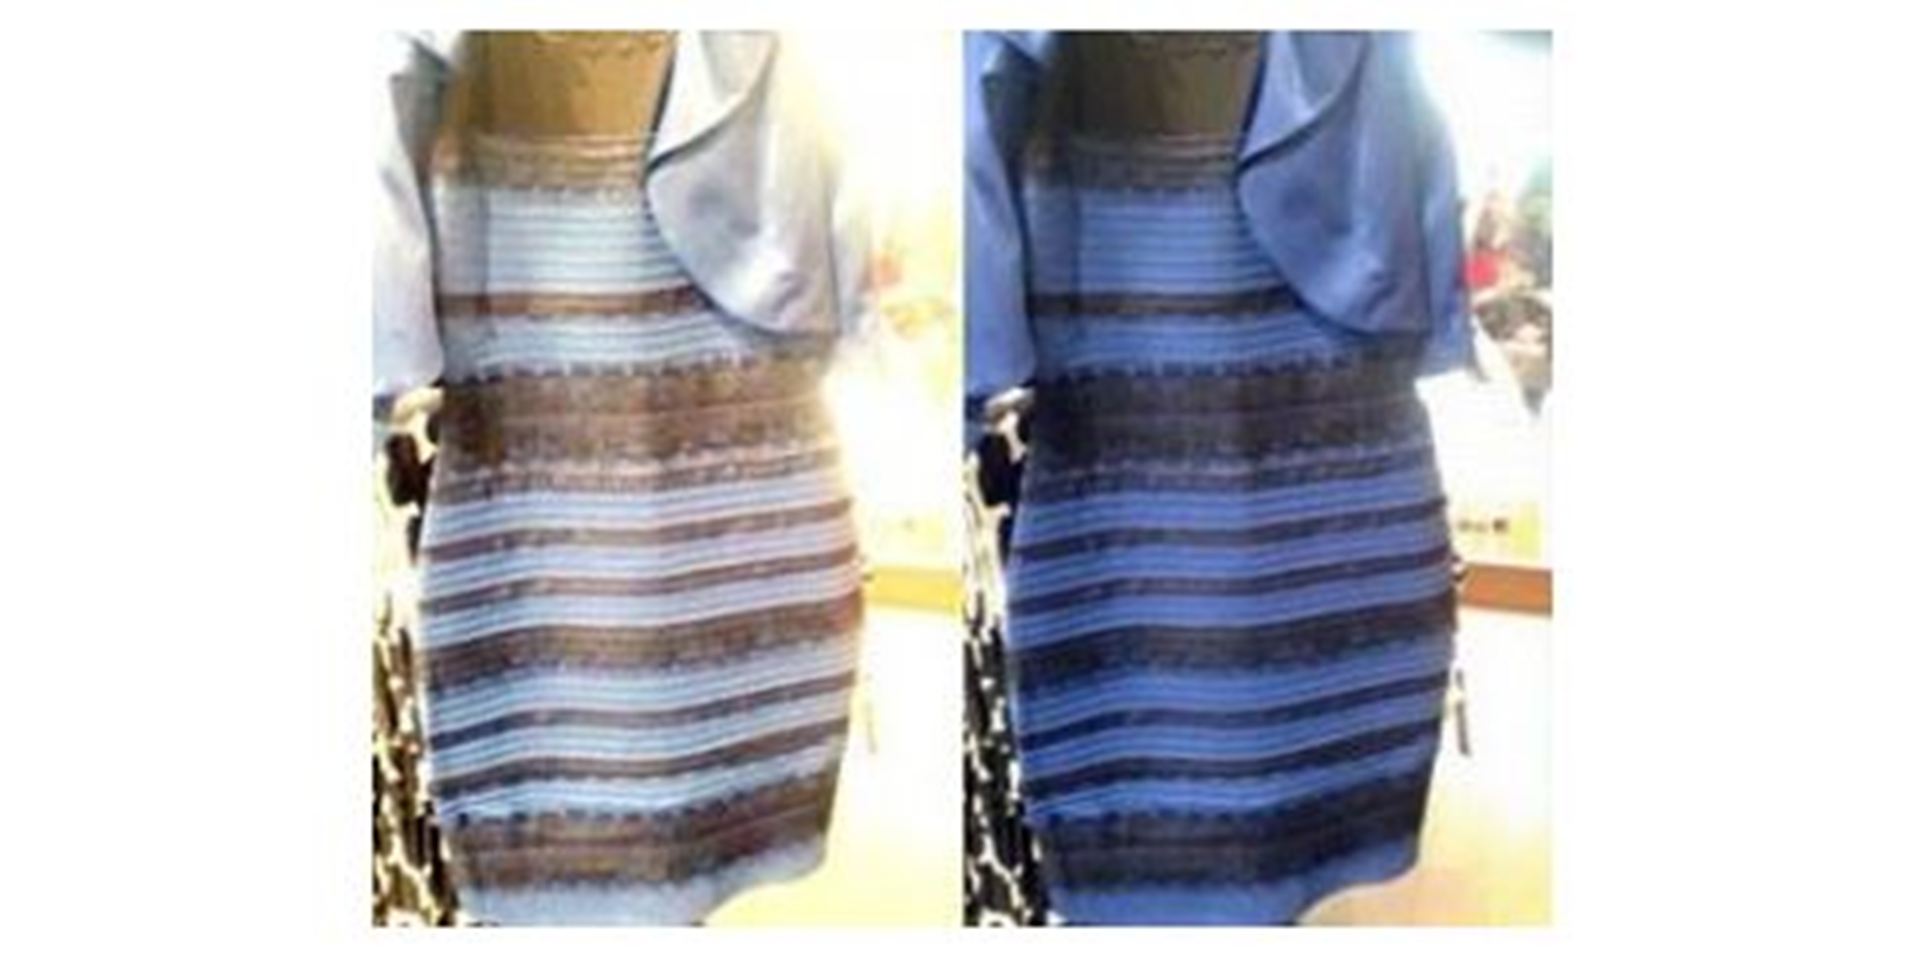 По разному или по разному. Платье дальтоник. Какого цвета платье тест. Вещи которые видят по разному. Каким цветом ты видишь платье.